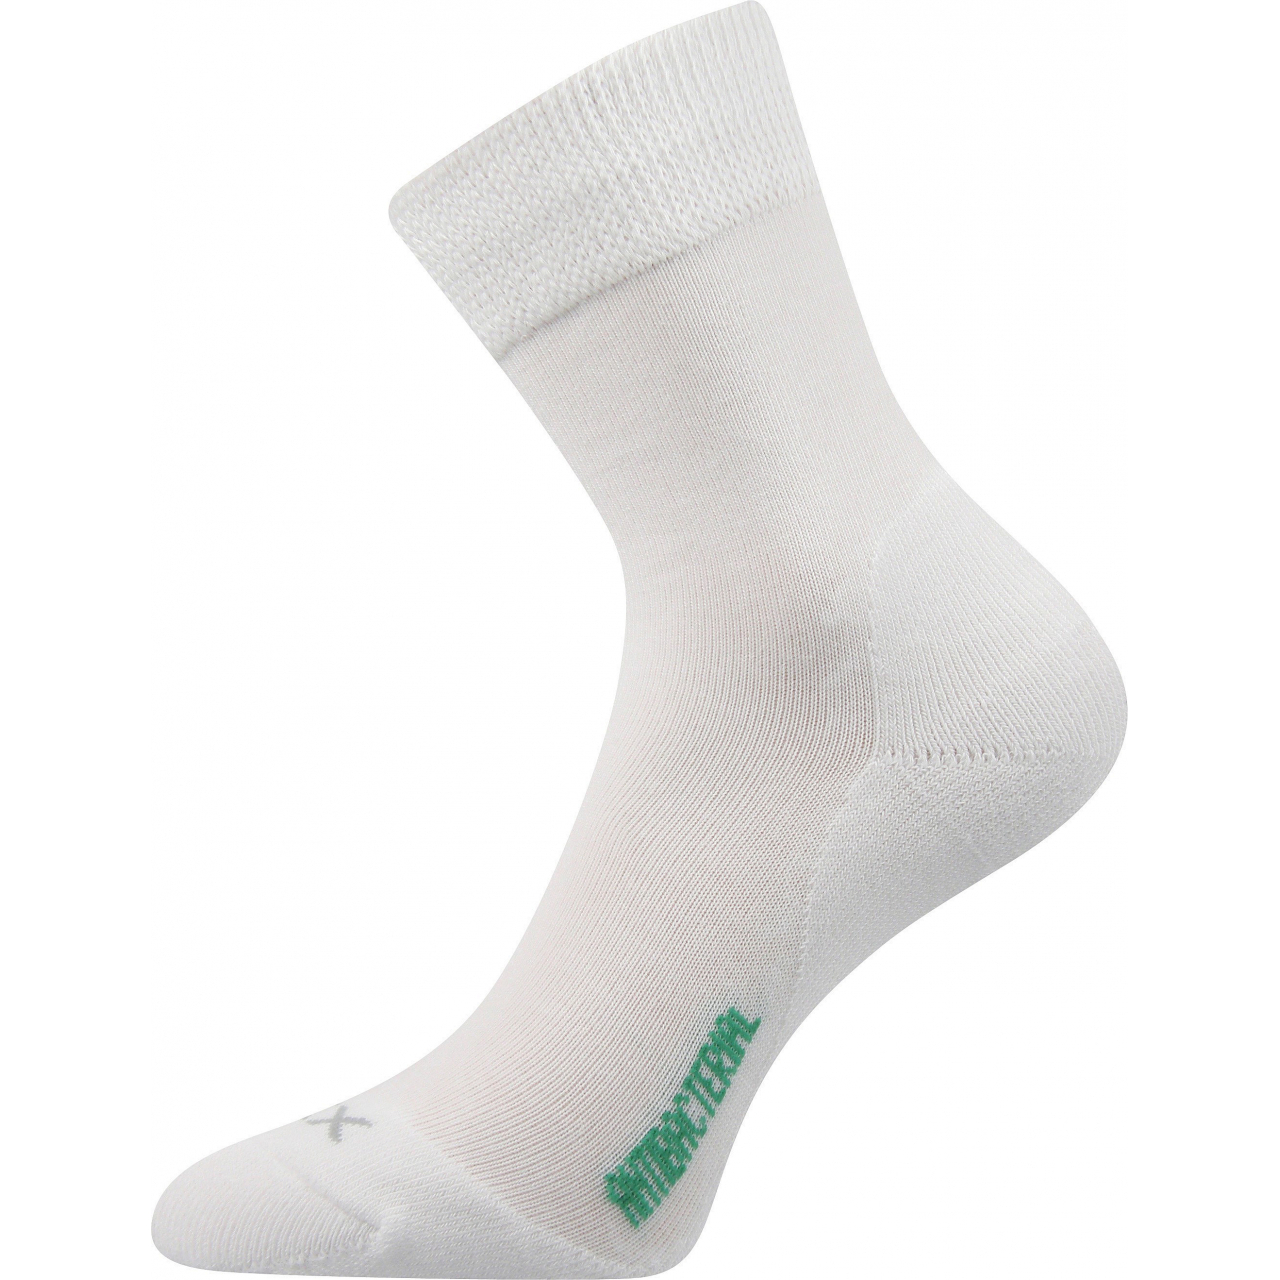 Ponožky zdravotní Voxx Zeus - bílé, 39-42